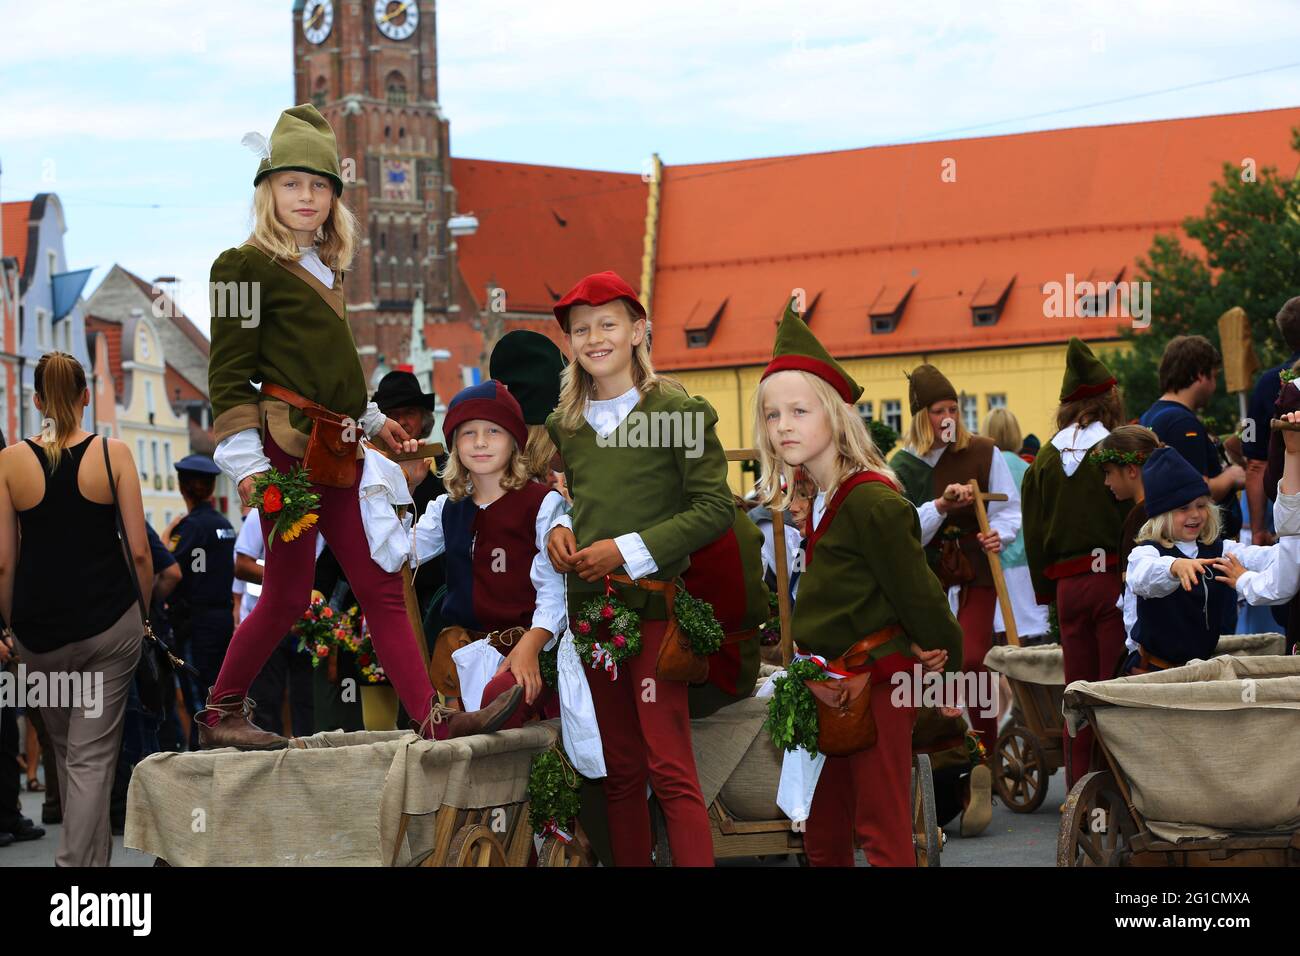 Landshuter Hochzeit oder Landshuter Fürstenhochzeit ist das größte Mittelalterfest Europas Stock Photo